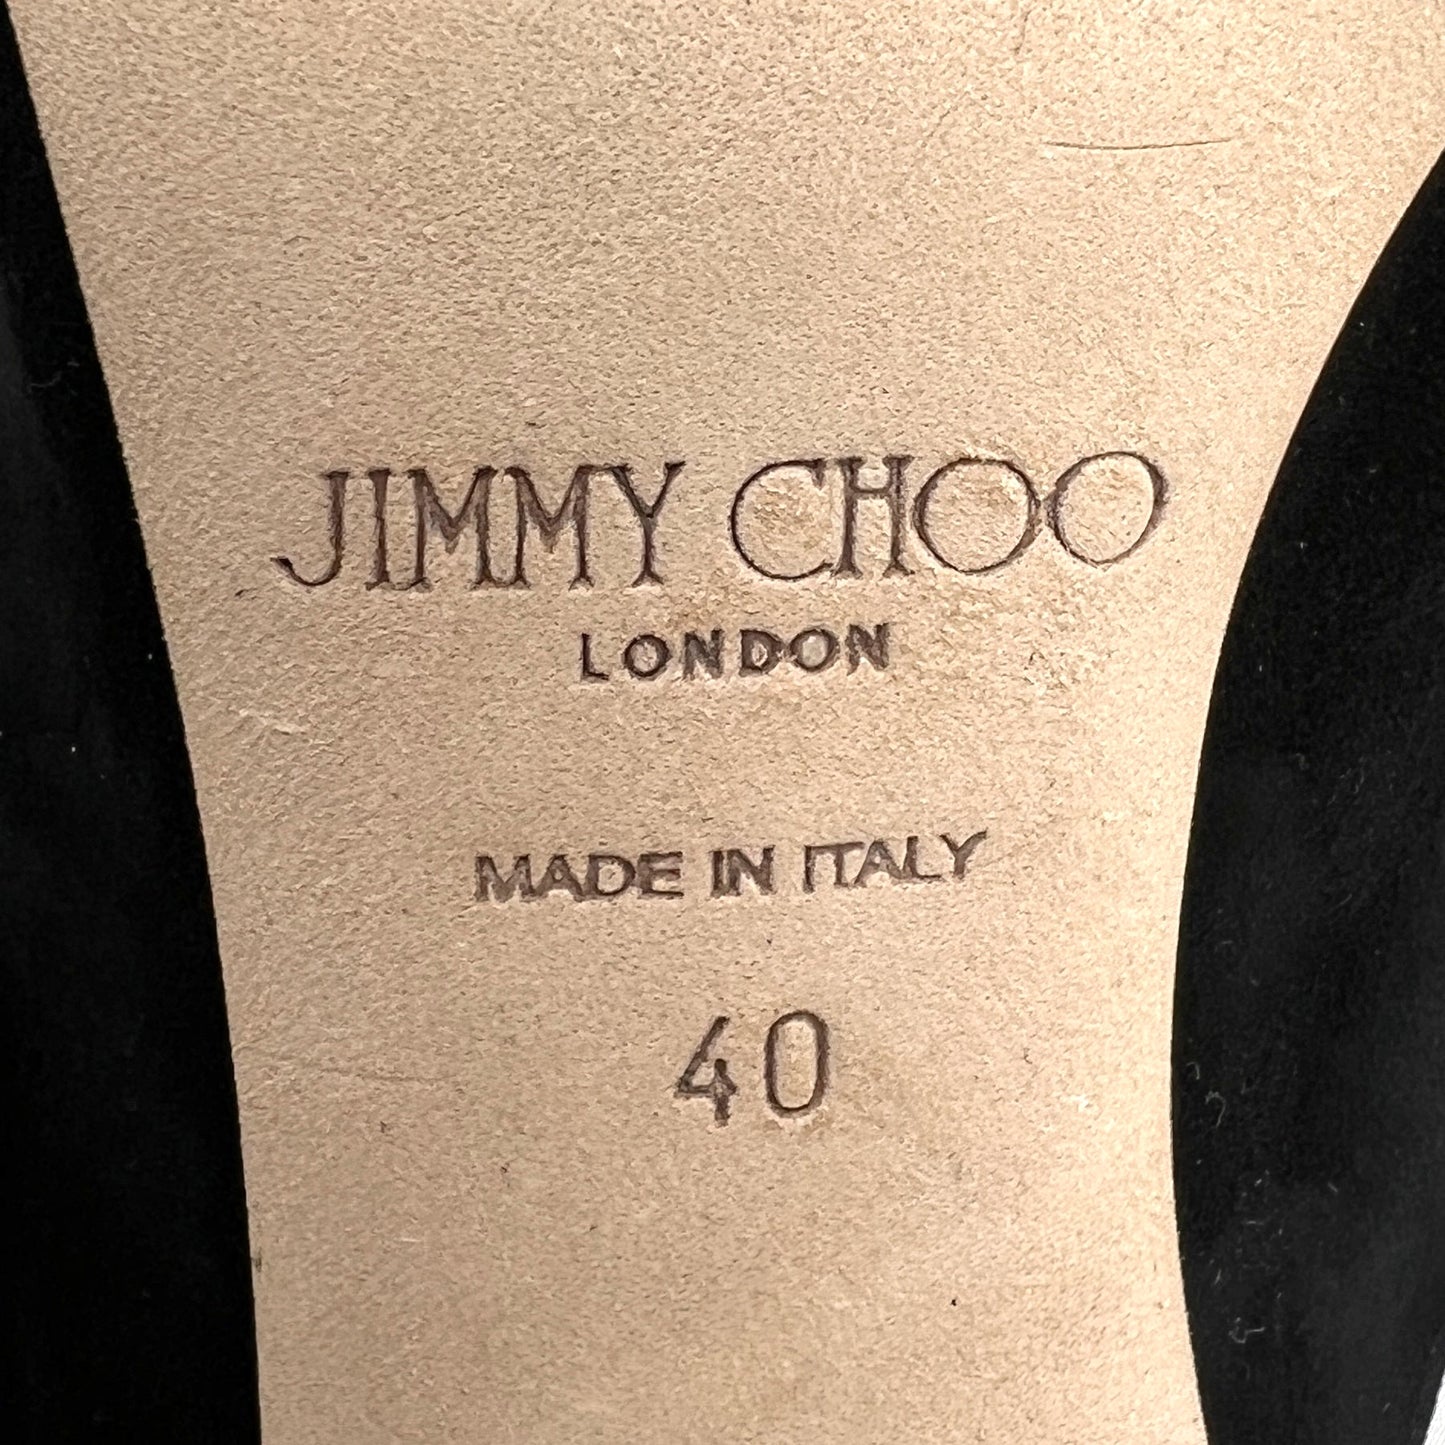 Jimmy Choo Saf Black Suede Crystal Embellished Buckle Sandal High Heel Mules Size EU 40